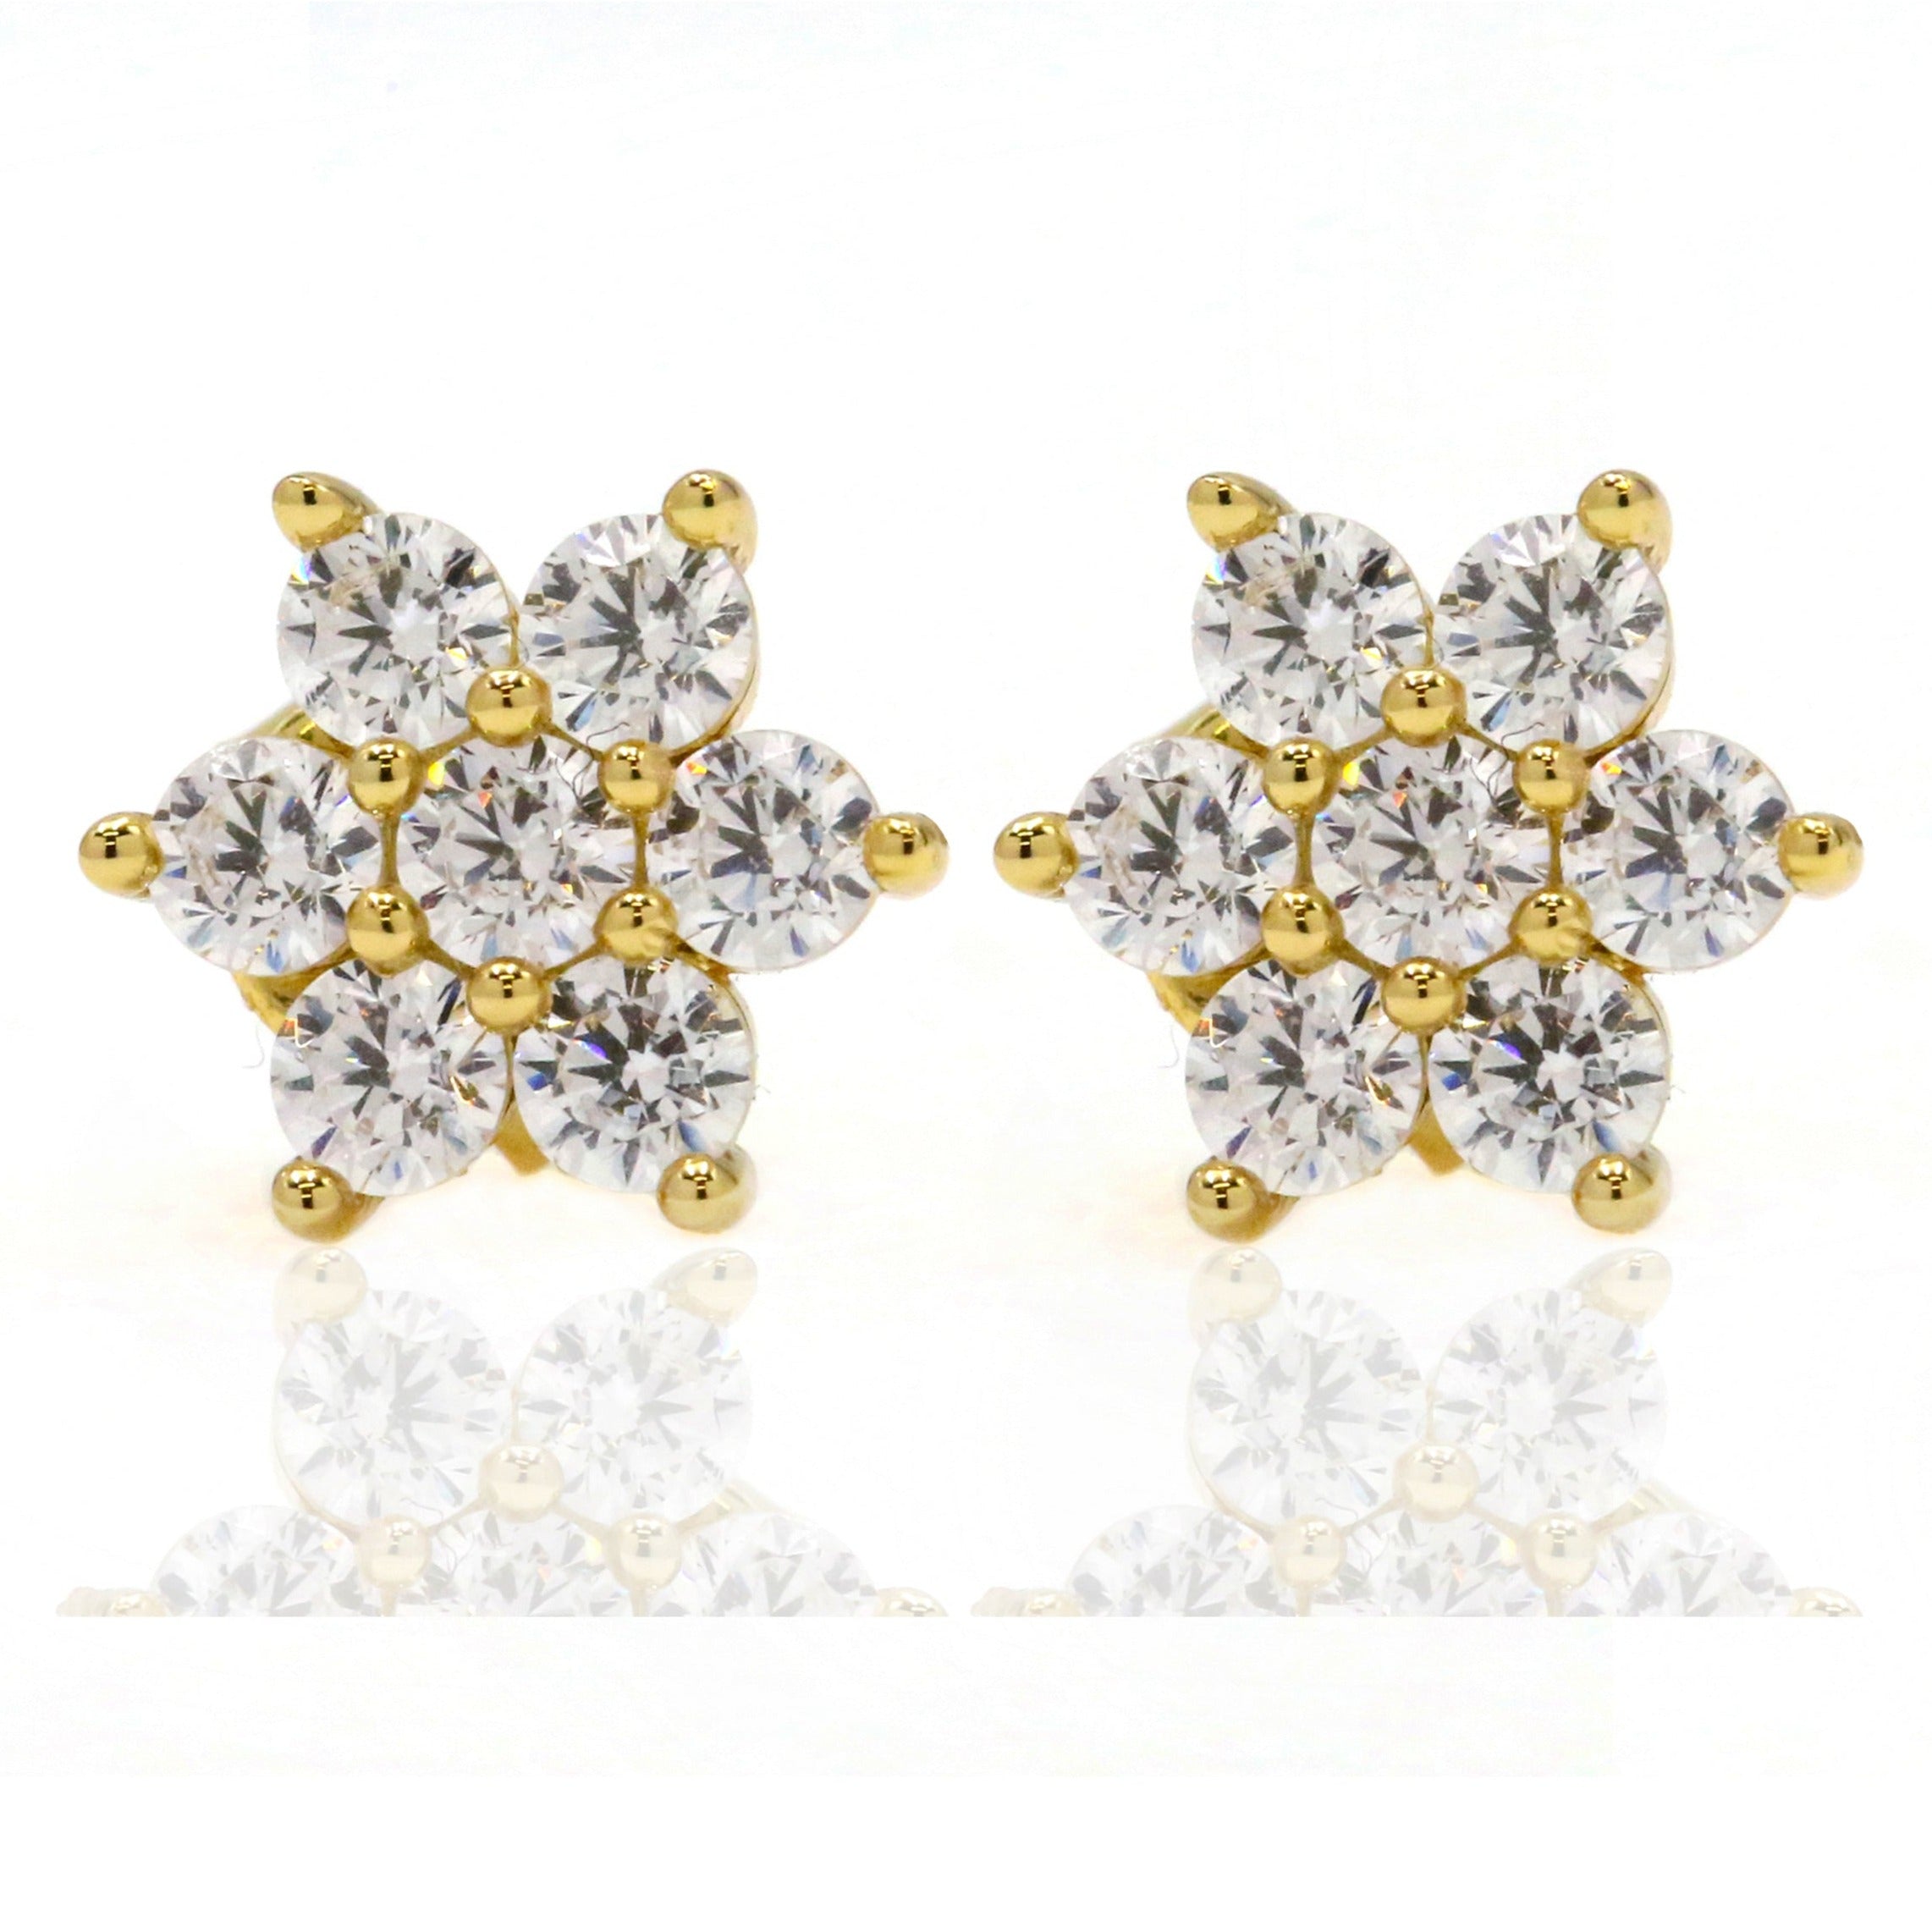 Women’s Cherry Blossom Flower Stud Earrings 18K Gold On Sterling Silver Gemsa London